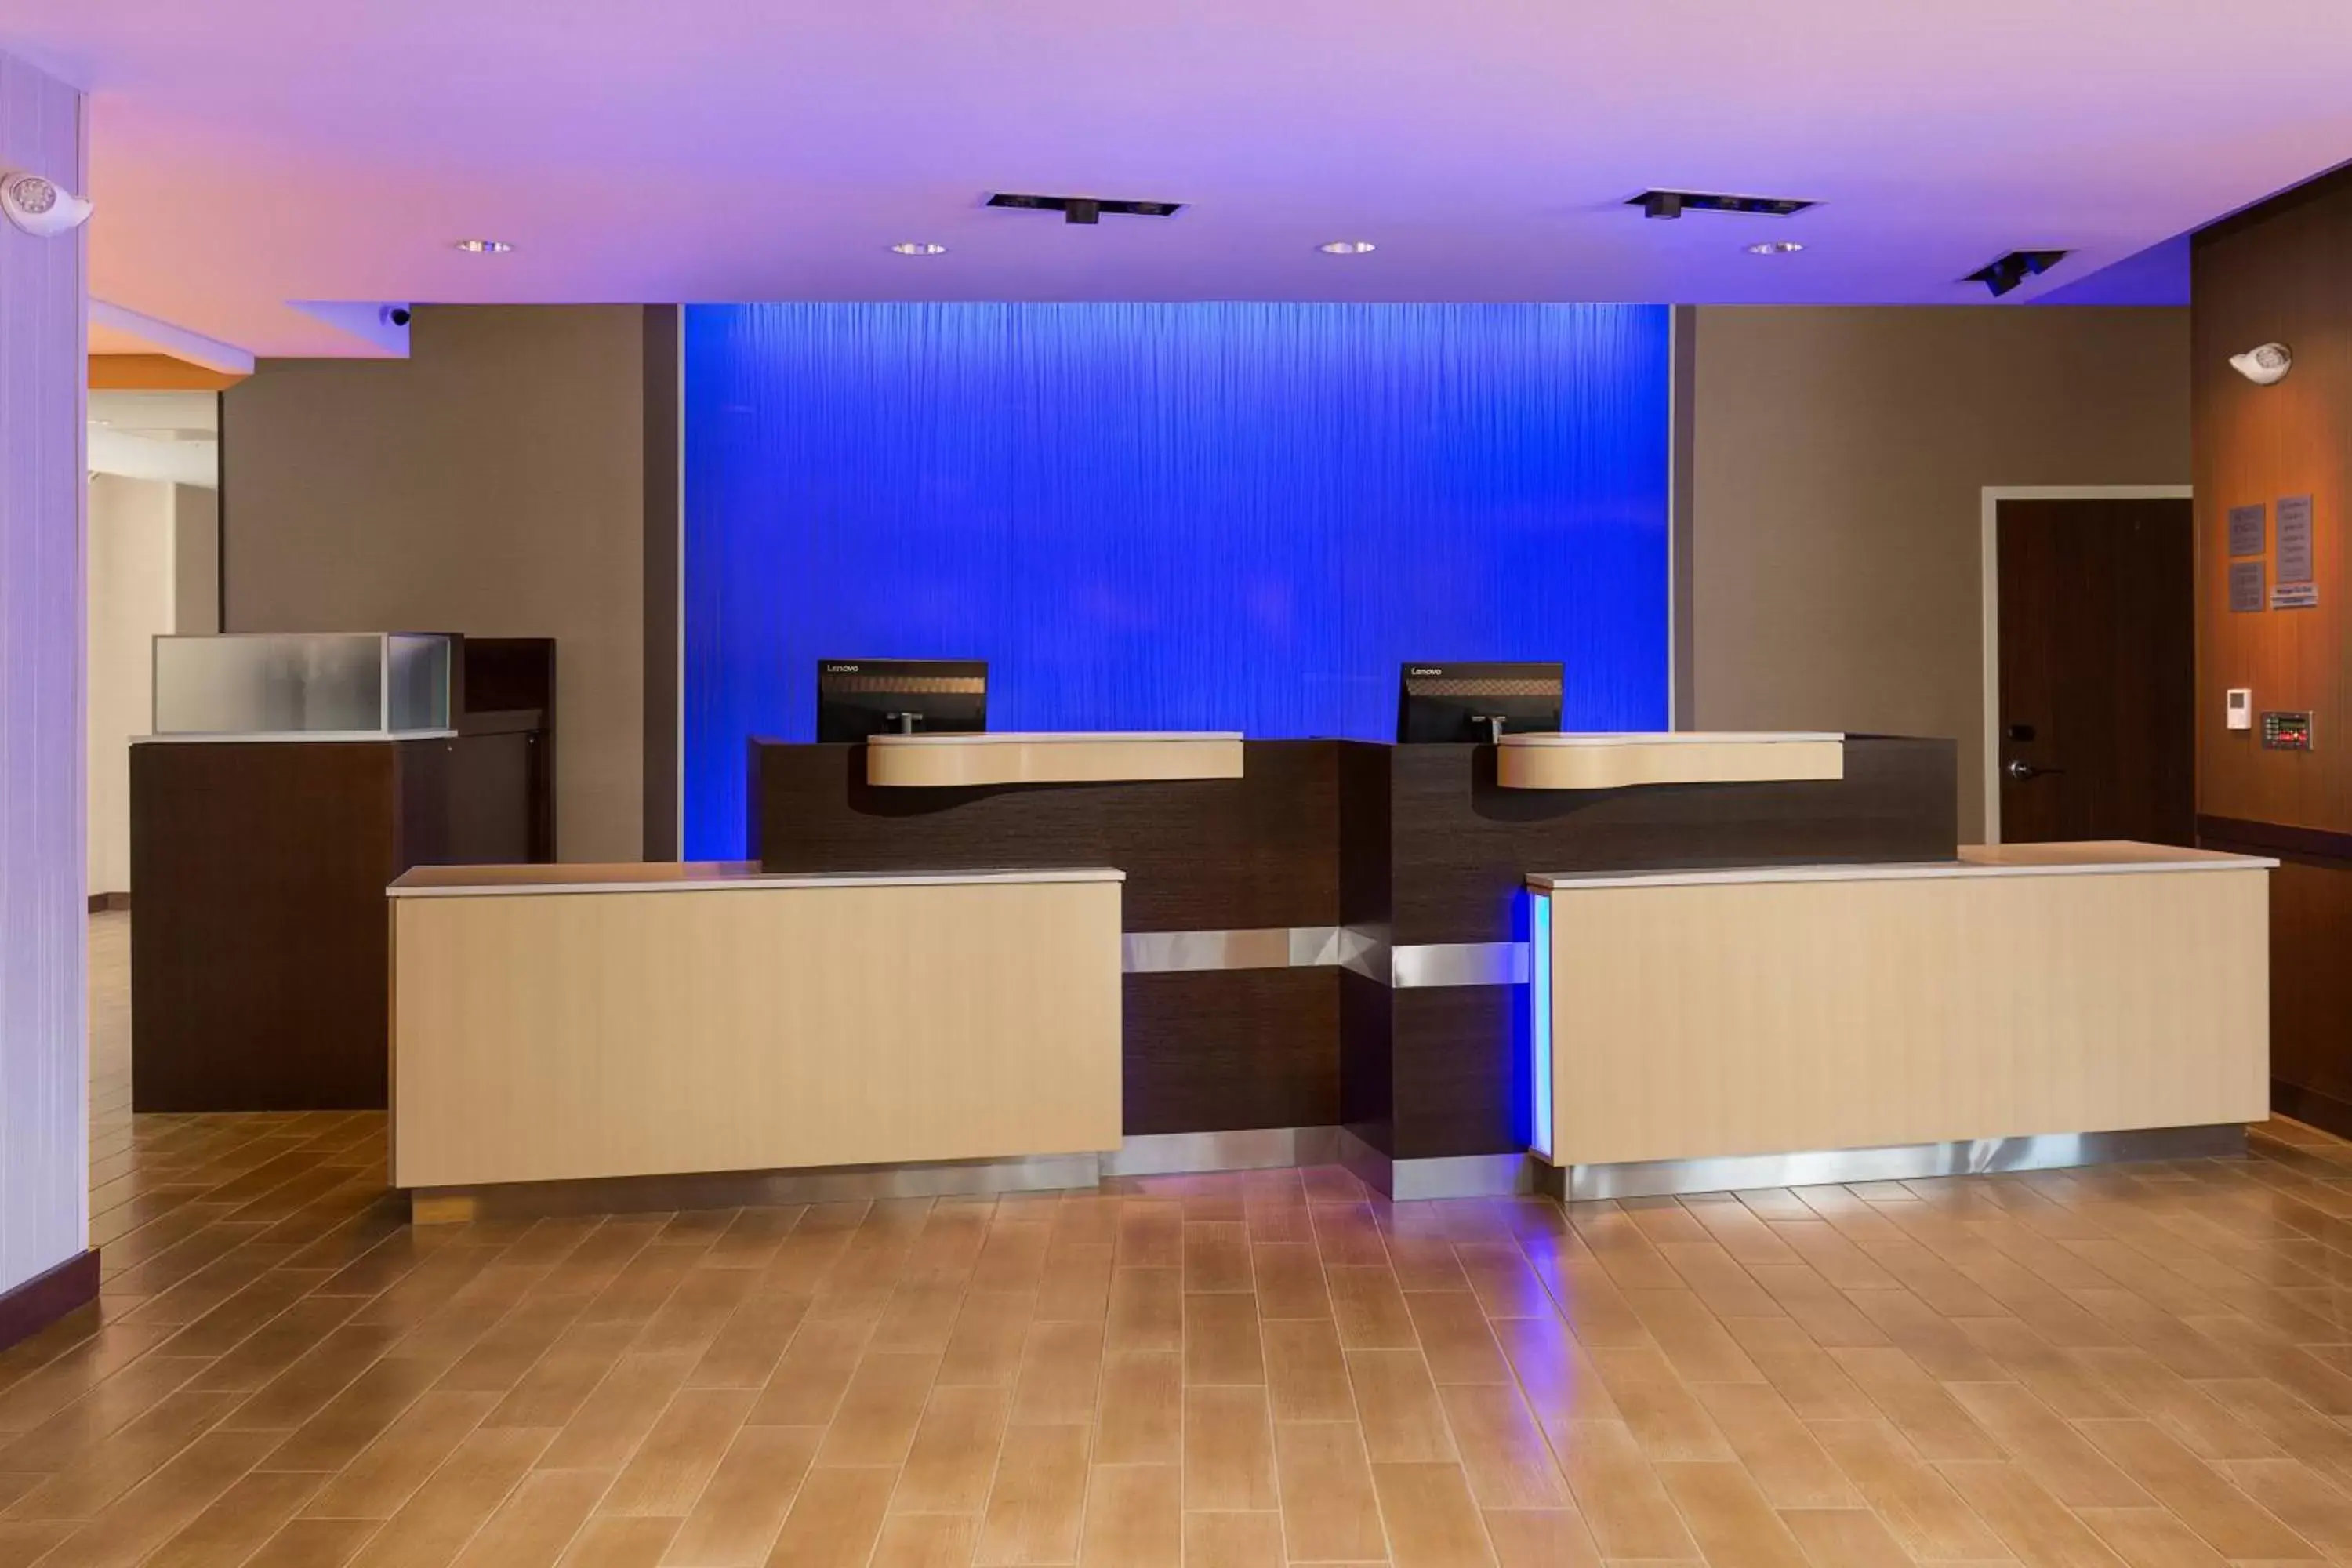 Lobby or reception in Fairfield Inn & Suites by Marriott Sacramento Folsom